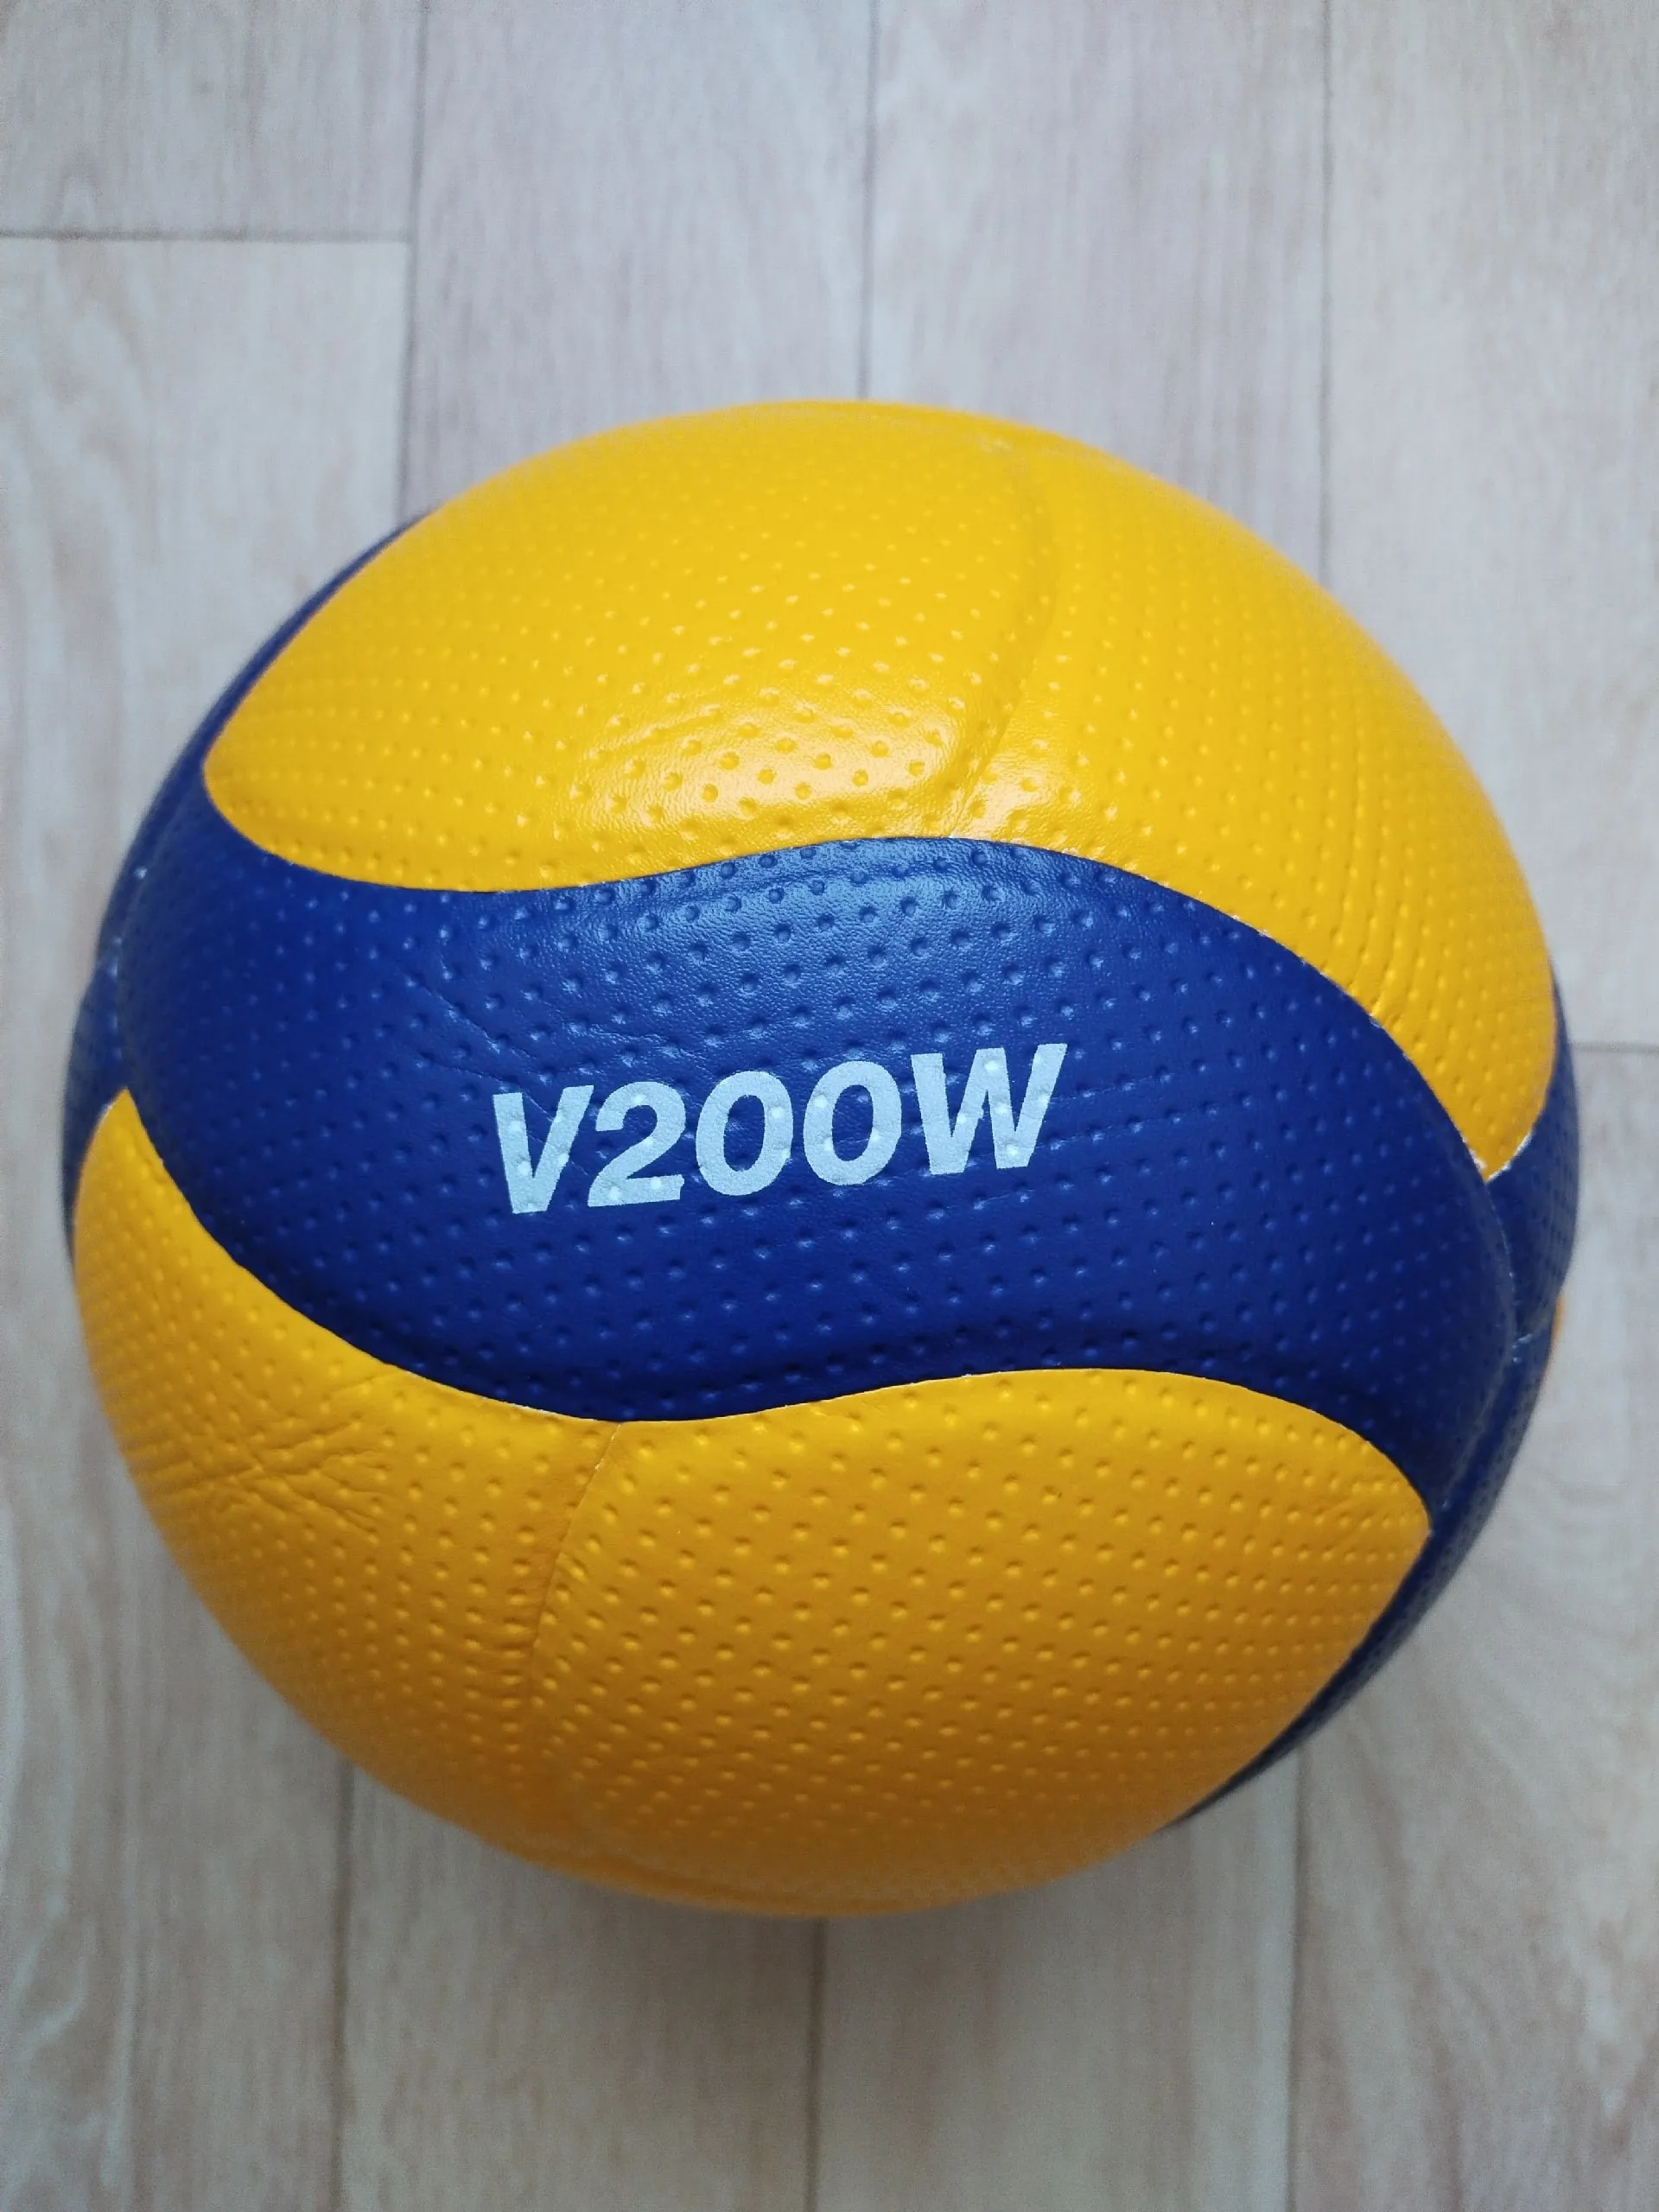 Мяч микаса оригинал. Мяч Микаса v200w. Профессиональный мяч для волейбола. Оригинальный мяч Микаса красно бело синий.